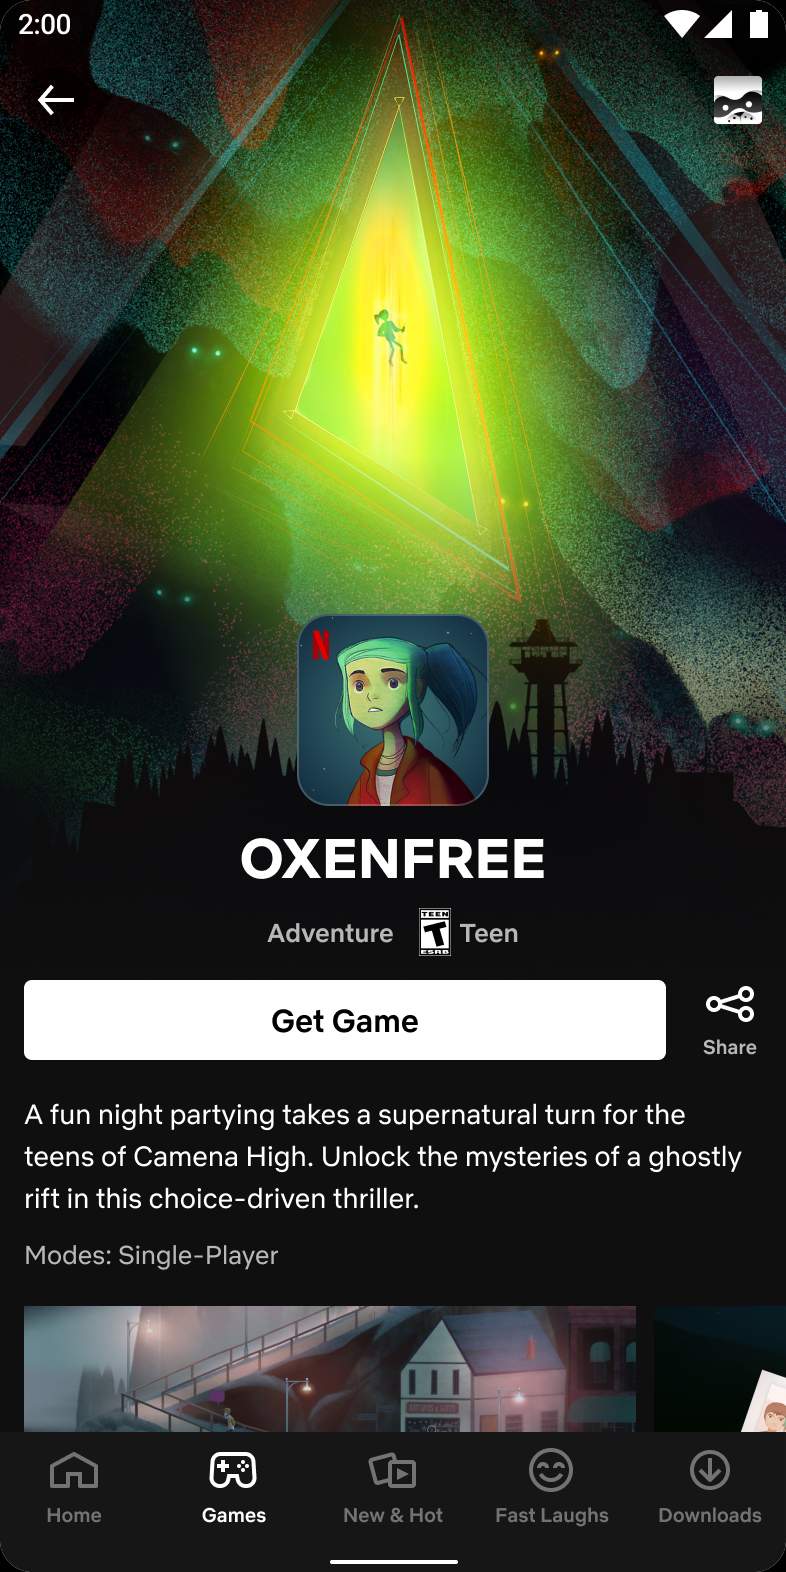 OXENFREE Das übernatürliche Mystery-Spiel ist jetzt auf Netflix verfügbar